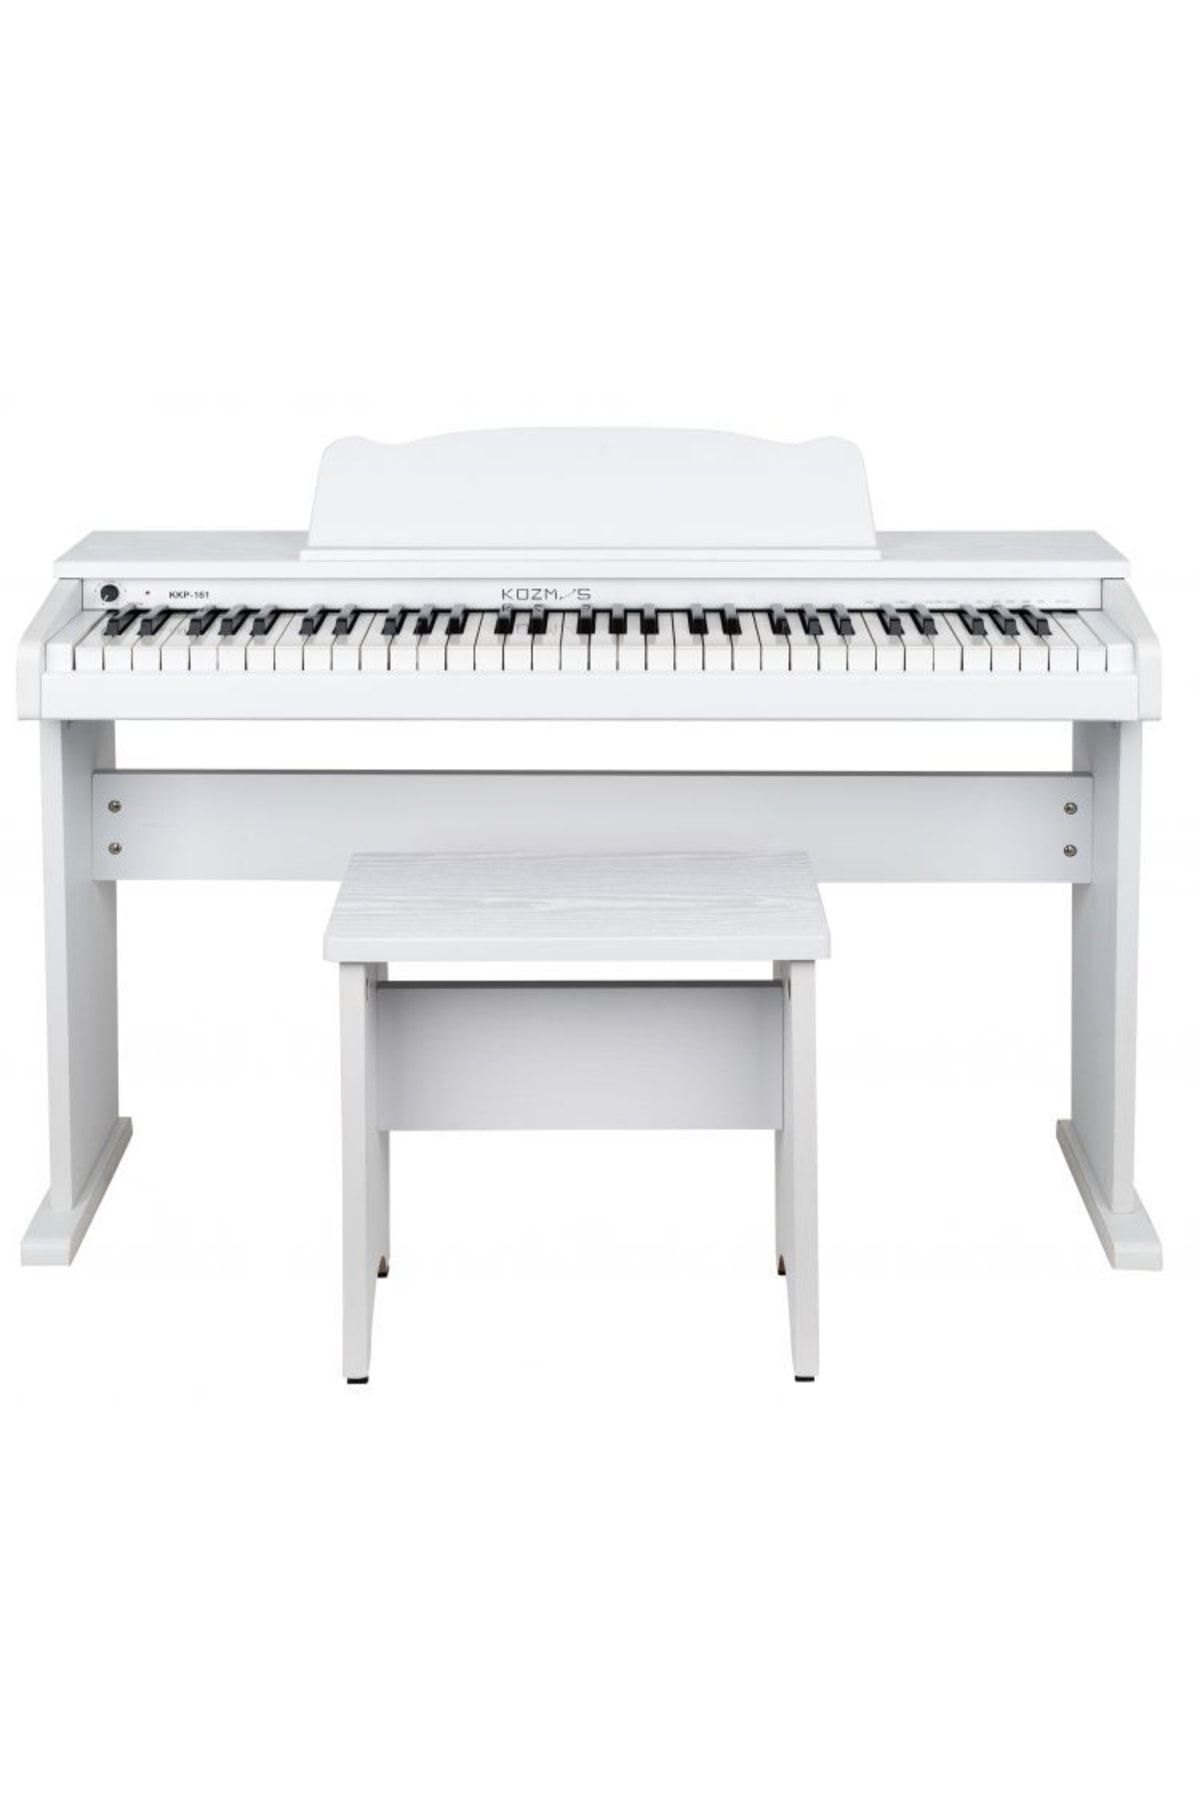 Genel Markalar Kkp-161wh Beyaz Dijital Duvar Tipi Çocuk Piyanosu